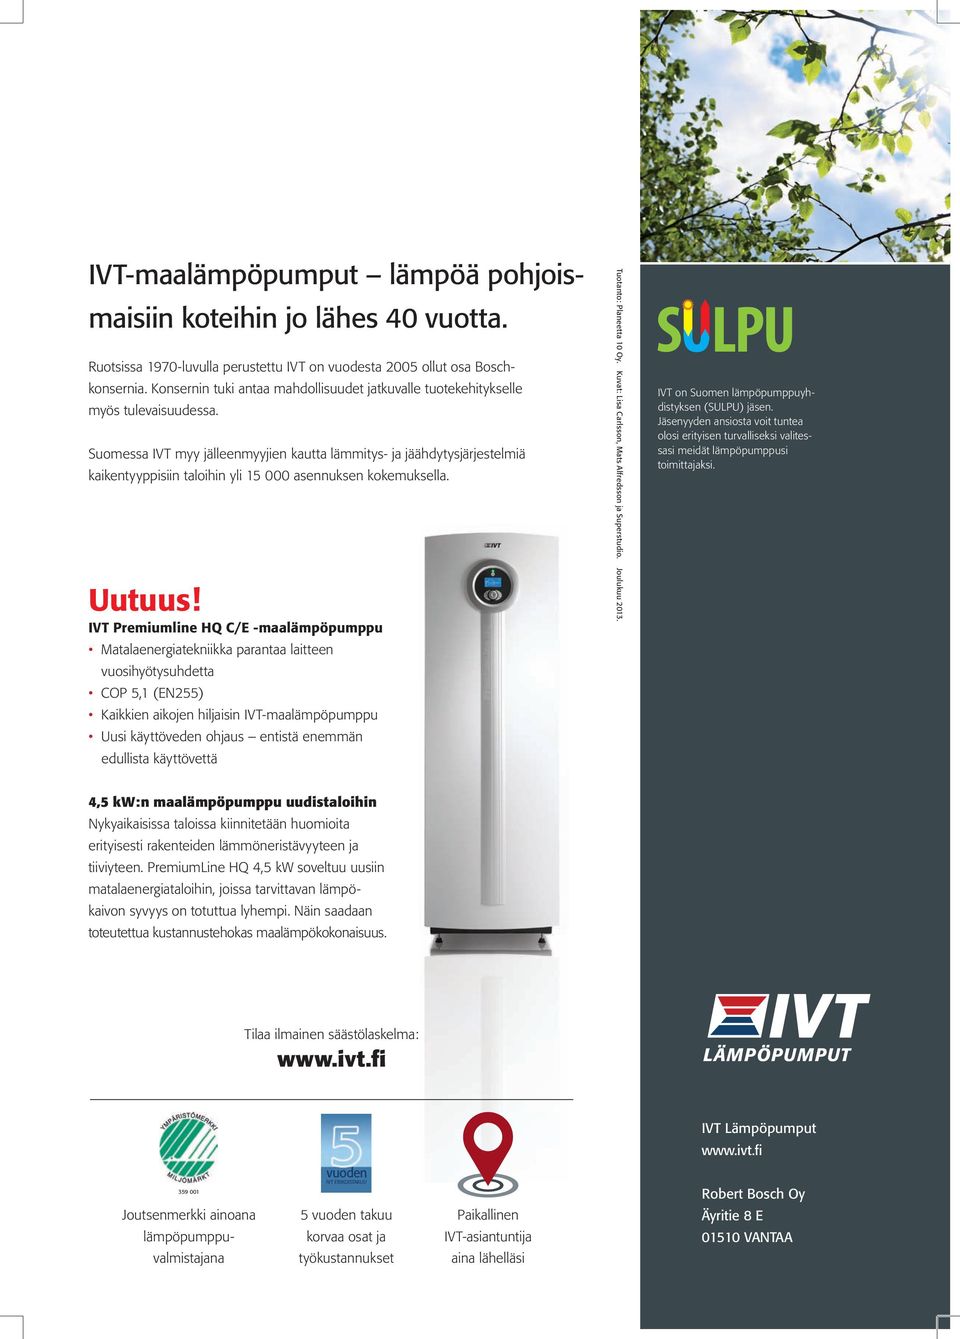 Suomessa IVT myy jälleenmyyjien kautta lämmitys- ja jäähdytysjärjestelmiä kaikentyyppisiin taloihin yli 15 000 asennuksen kokemuksella. Uutuus!